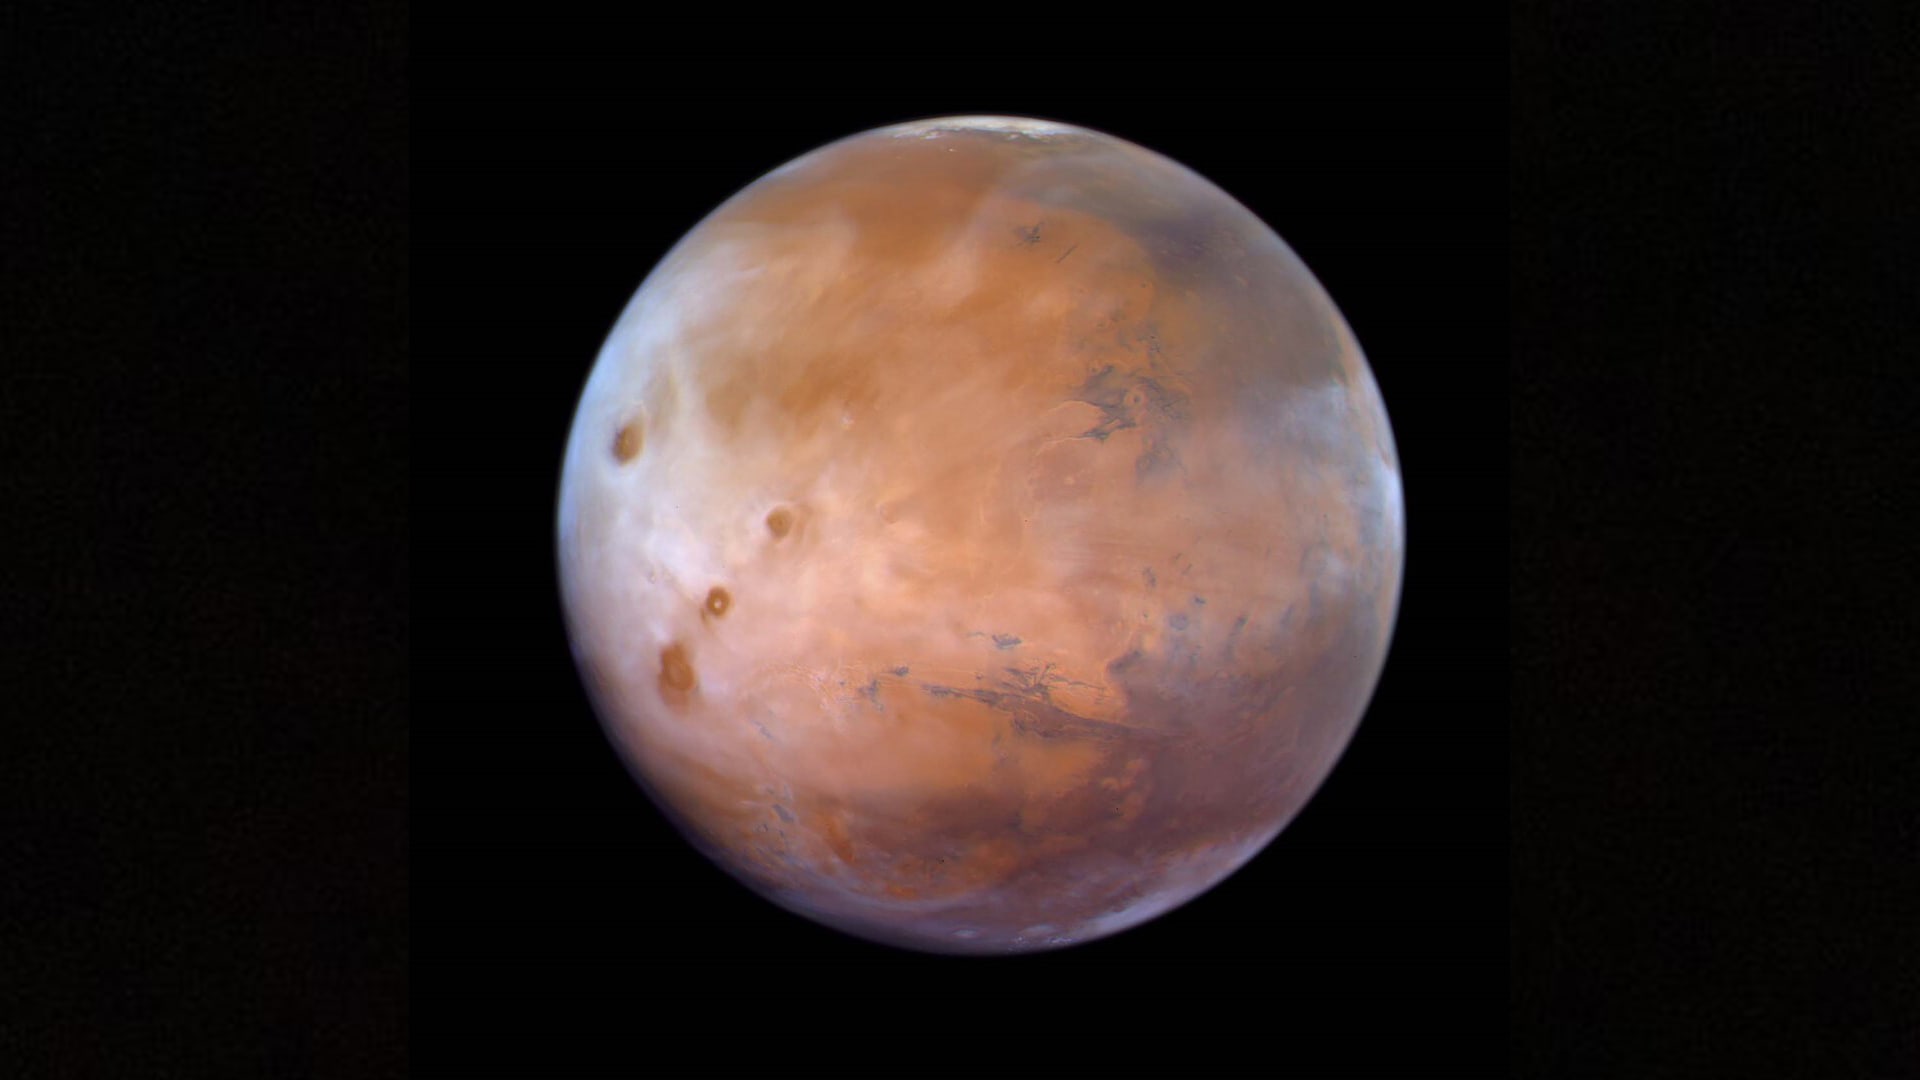 "مسبار الأمل" يقدم اكتشافات جديدة عن المريخ.. ومحمد بن راشد: بدأنا مشاركة البيانات